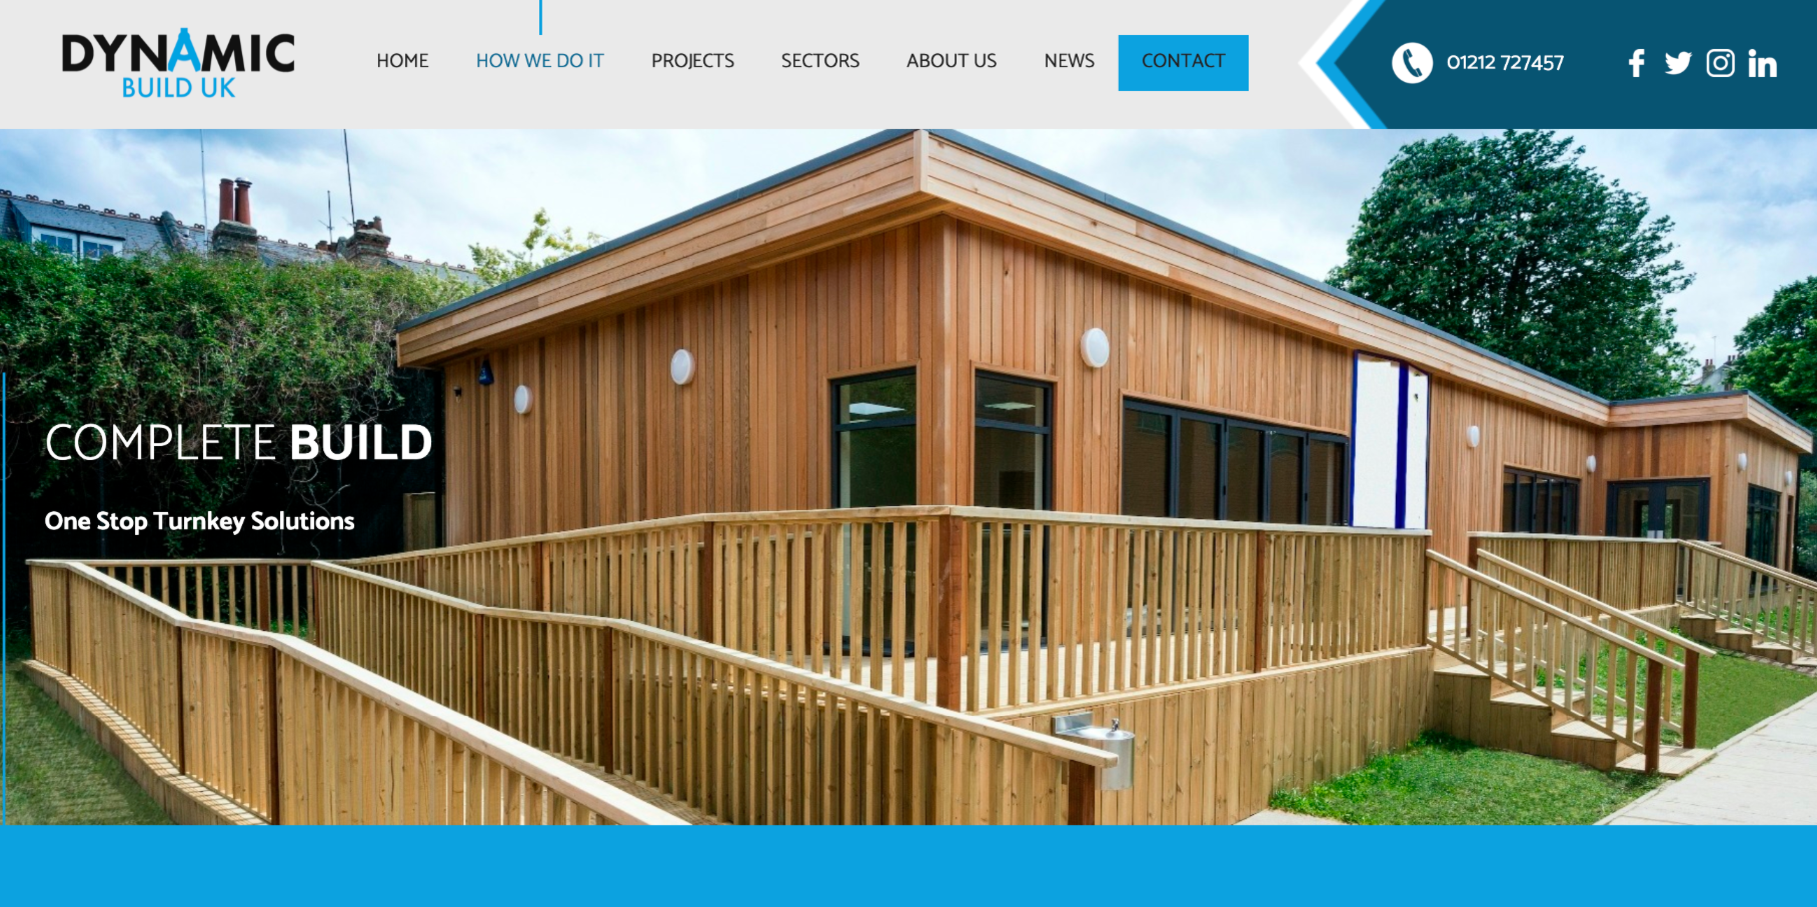 Website design company in Harborne, Birmingham